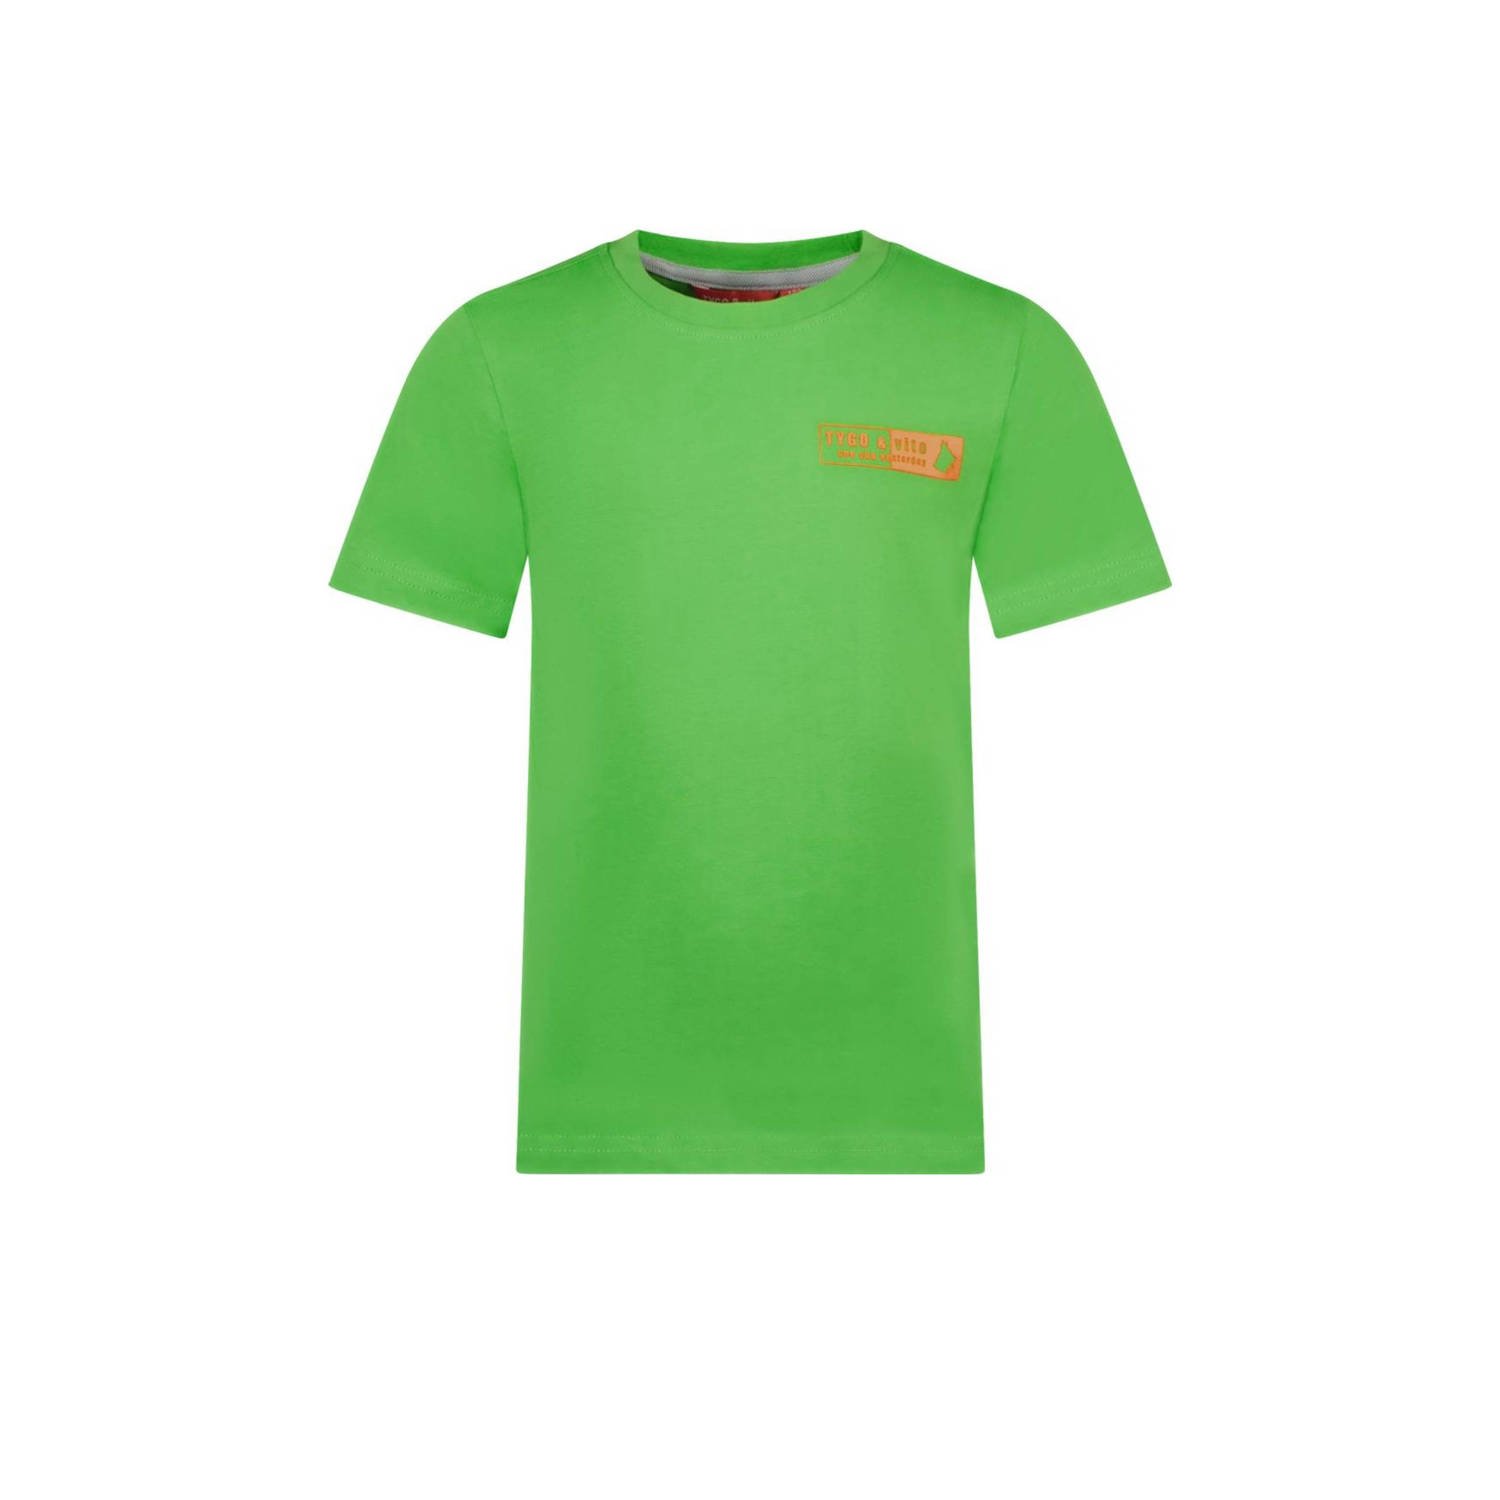 TYGO & vito T-shirt Tijn met printopdruk neongroen Jongens Biologisch katoen Ronde hals 110 116